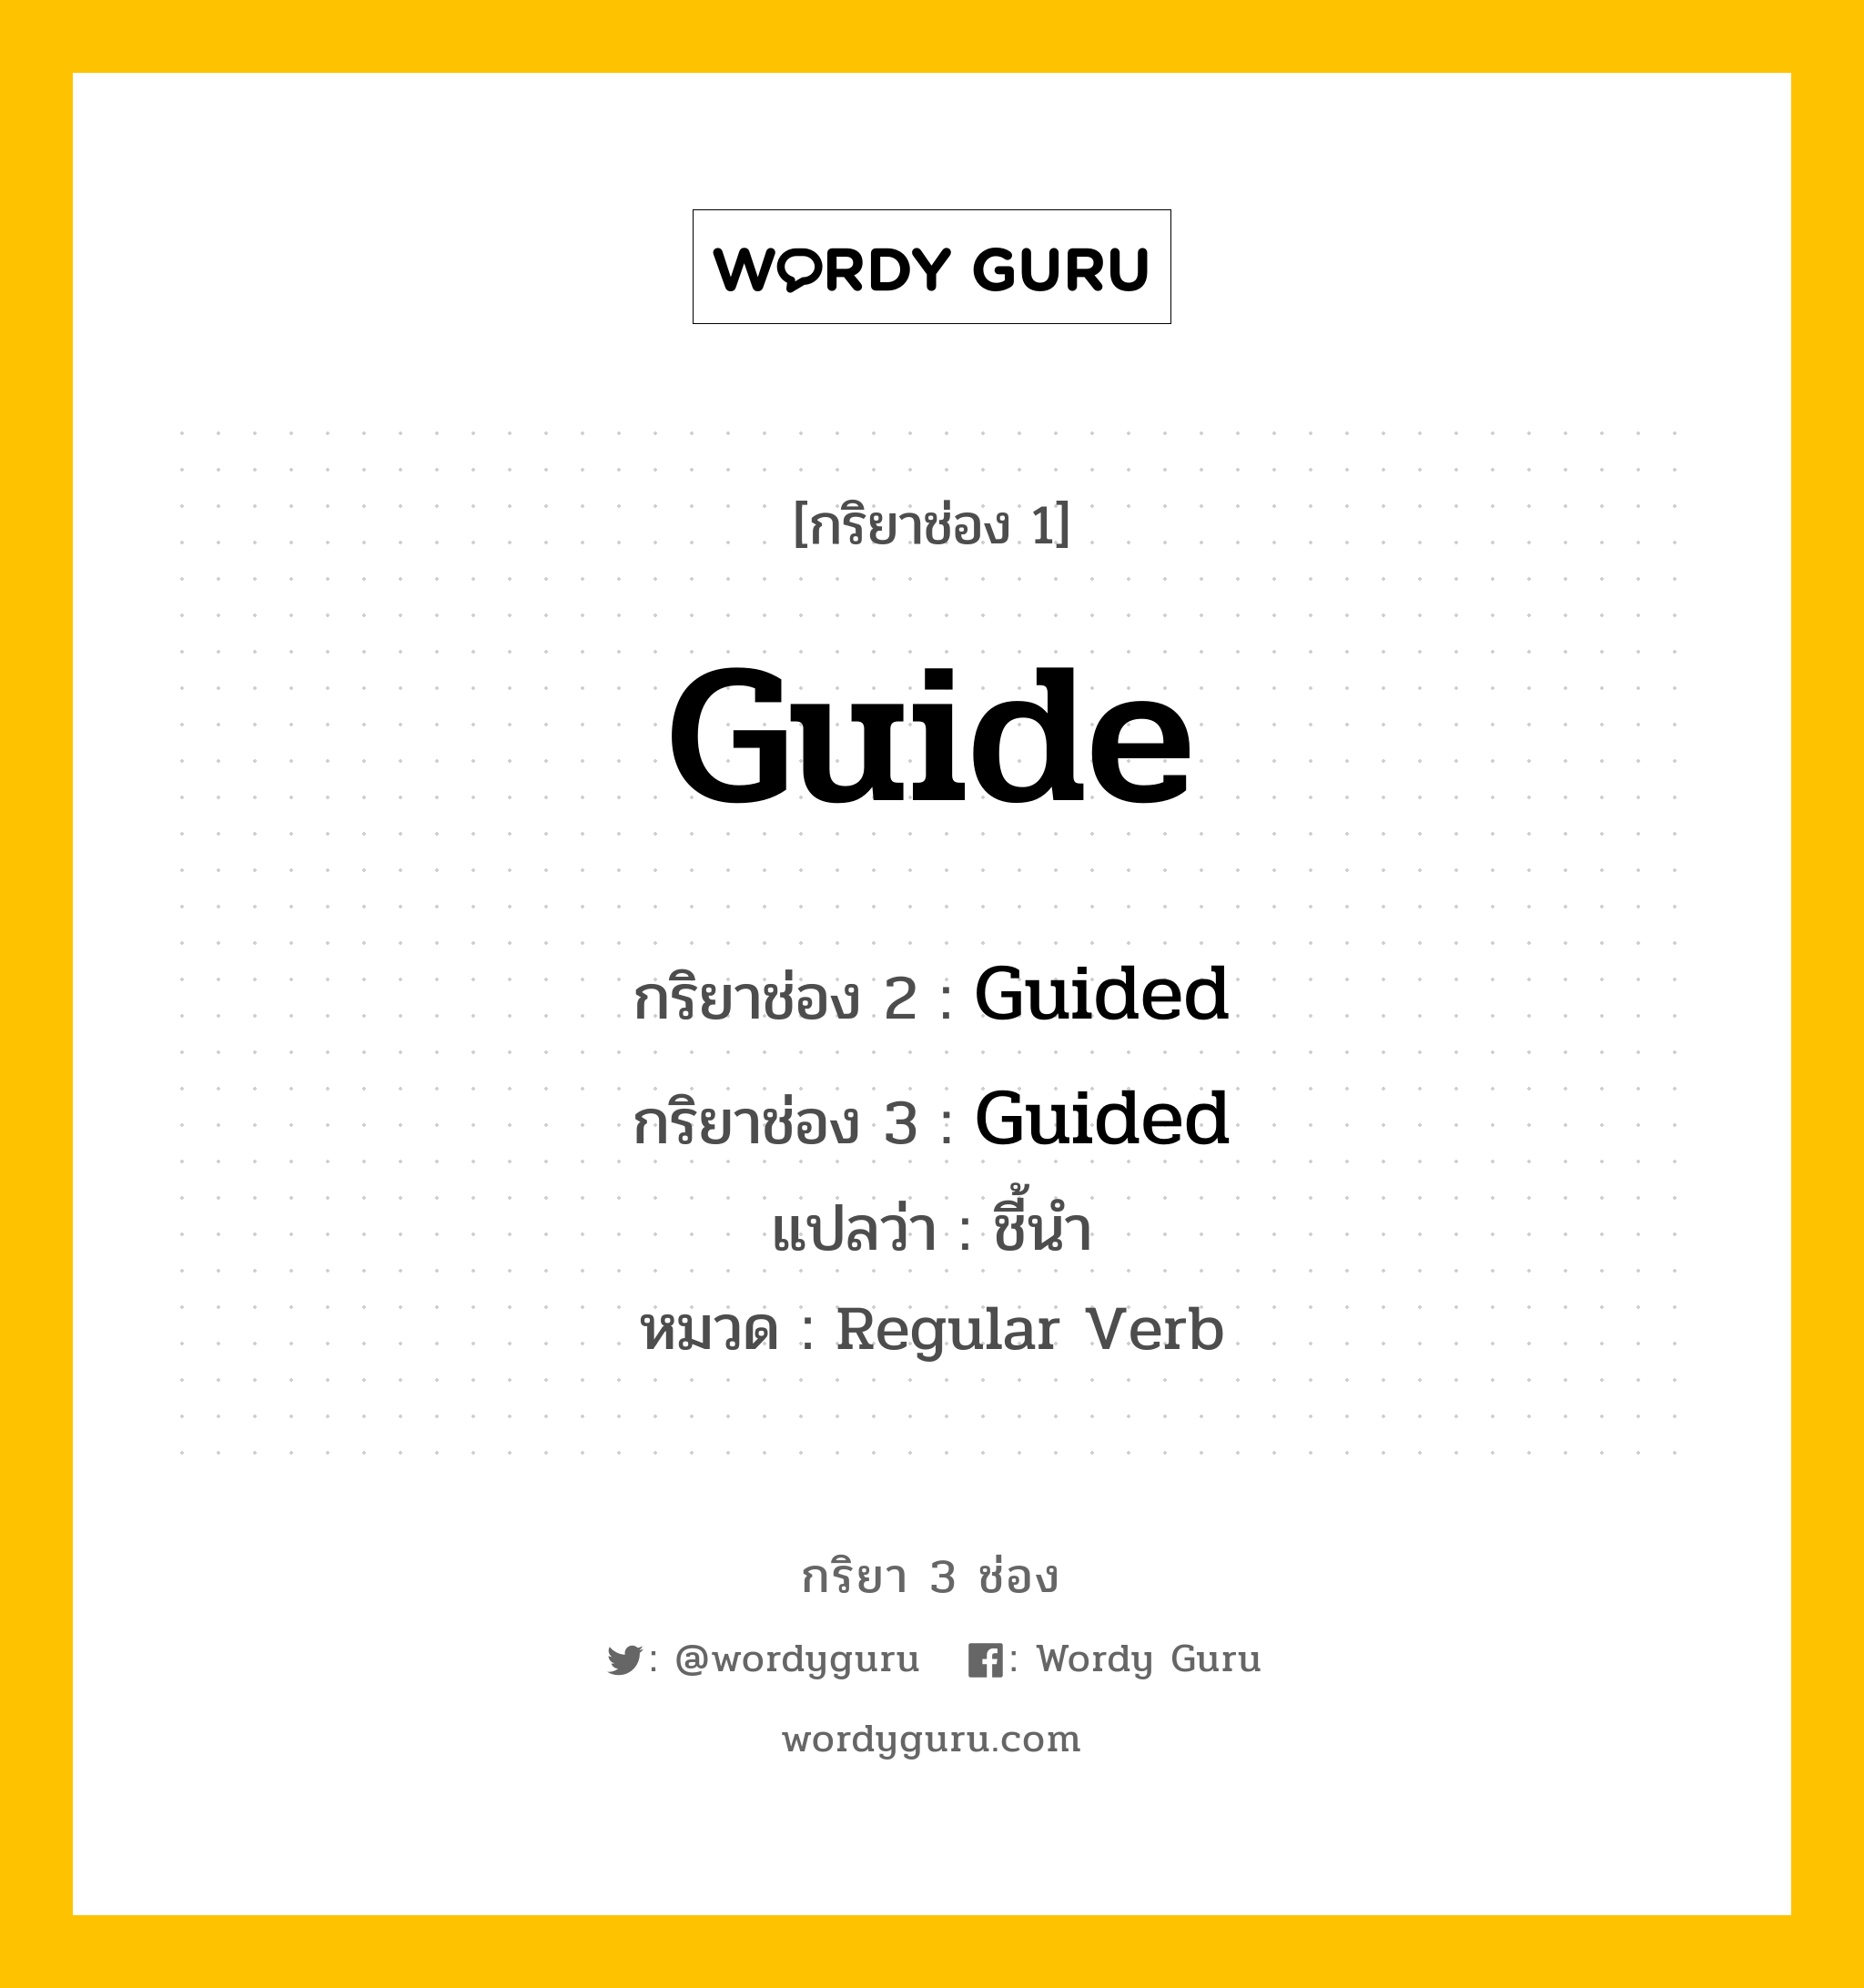 กริยา 3 ช่อง: Guide ช่อง 2 Guide ช่อง 3 คืออะไร, กริยาช่อง 1 Guide กริยาช่อง 2 Guided กริยาช่อง 3 Guided แปลว่า ชี้นำ หมวด Regular Verb หมวด Regular Verb